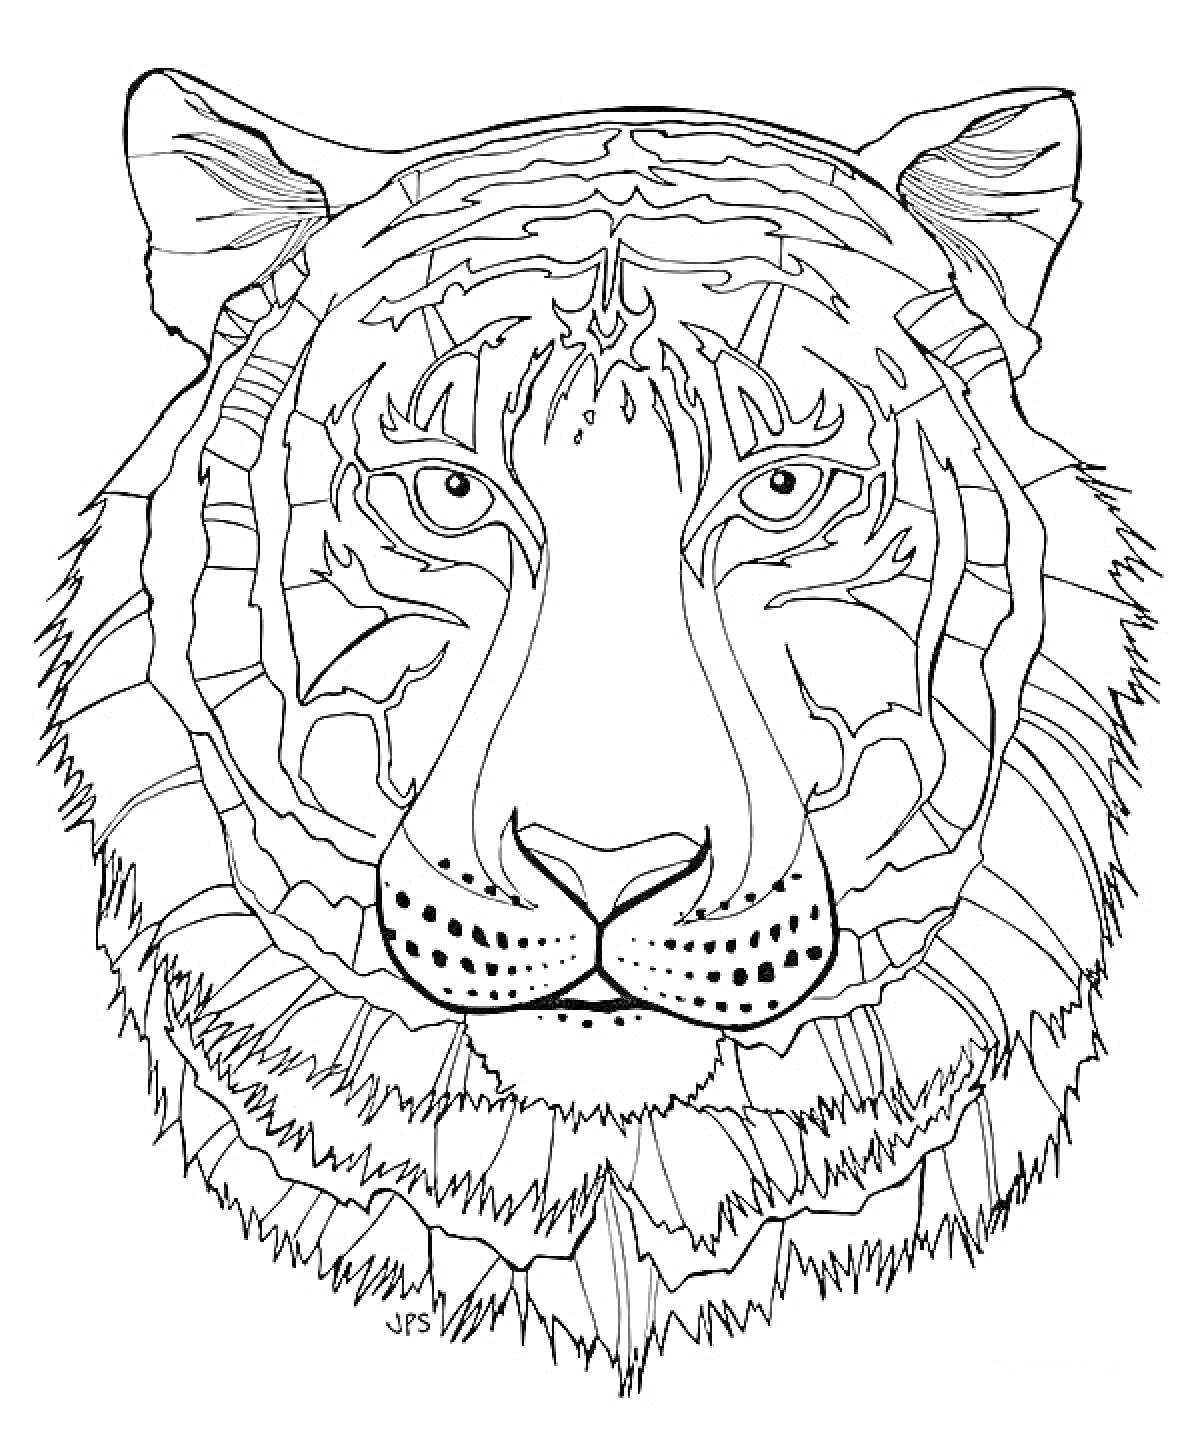 Раскраска Антистресс раскраска с изображением морды тигра в подробных линиях и узорах.